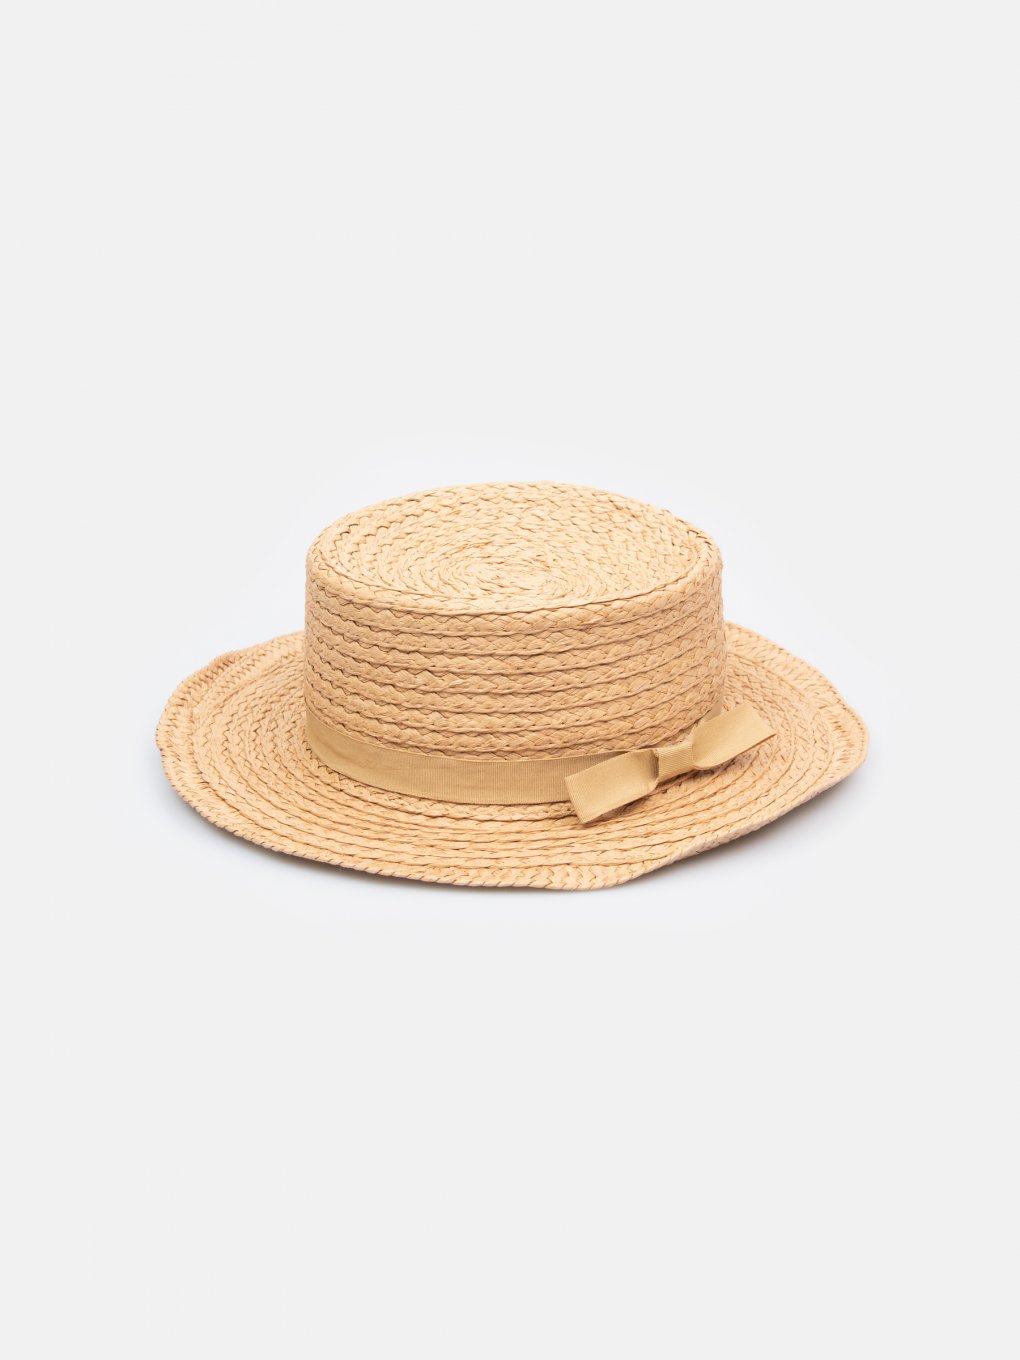 Dámský slaměný klobouk boater s mašlí